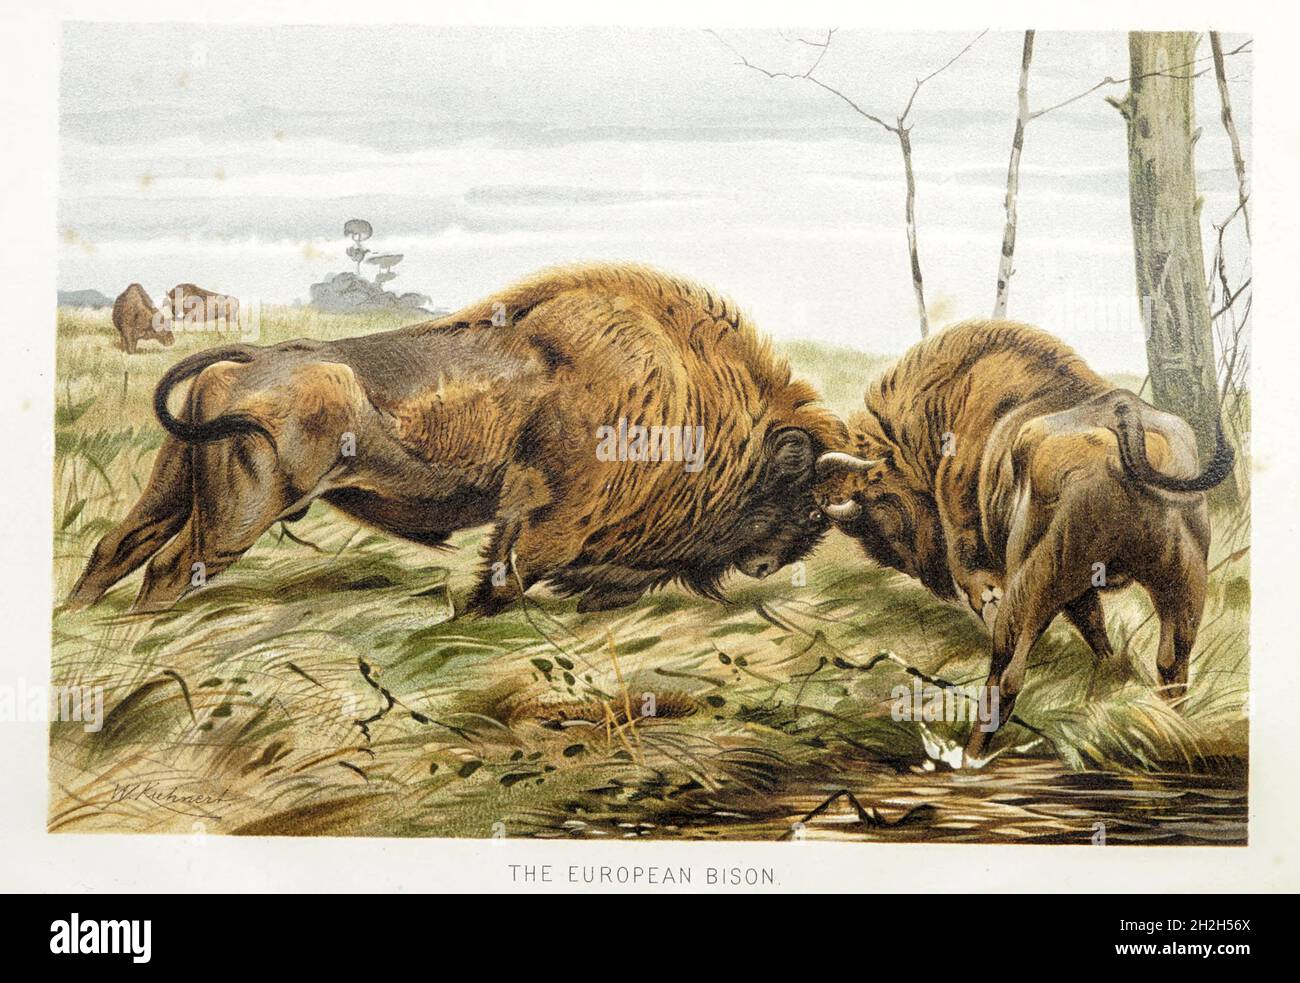 Der Europäische Bison (Bison bonasus) oder der Europäische Holzbison, auch bekannt als der Wisent oder Zubr oder umgangssprachlich der europäische Büffel, ist eine europäische Art von Bison. Aus dem Buch ' Royal Natural History ' Band 2 herausgegeben von Richard Lydekker, veröffentlicht in London von Frederick Warne & Co im Jahr 1893-1894 Stockfoto